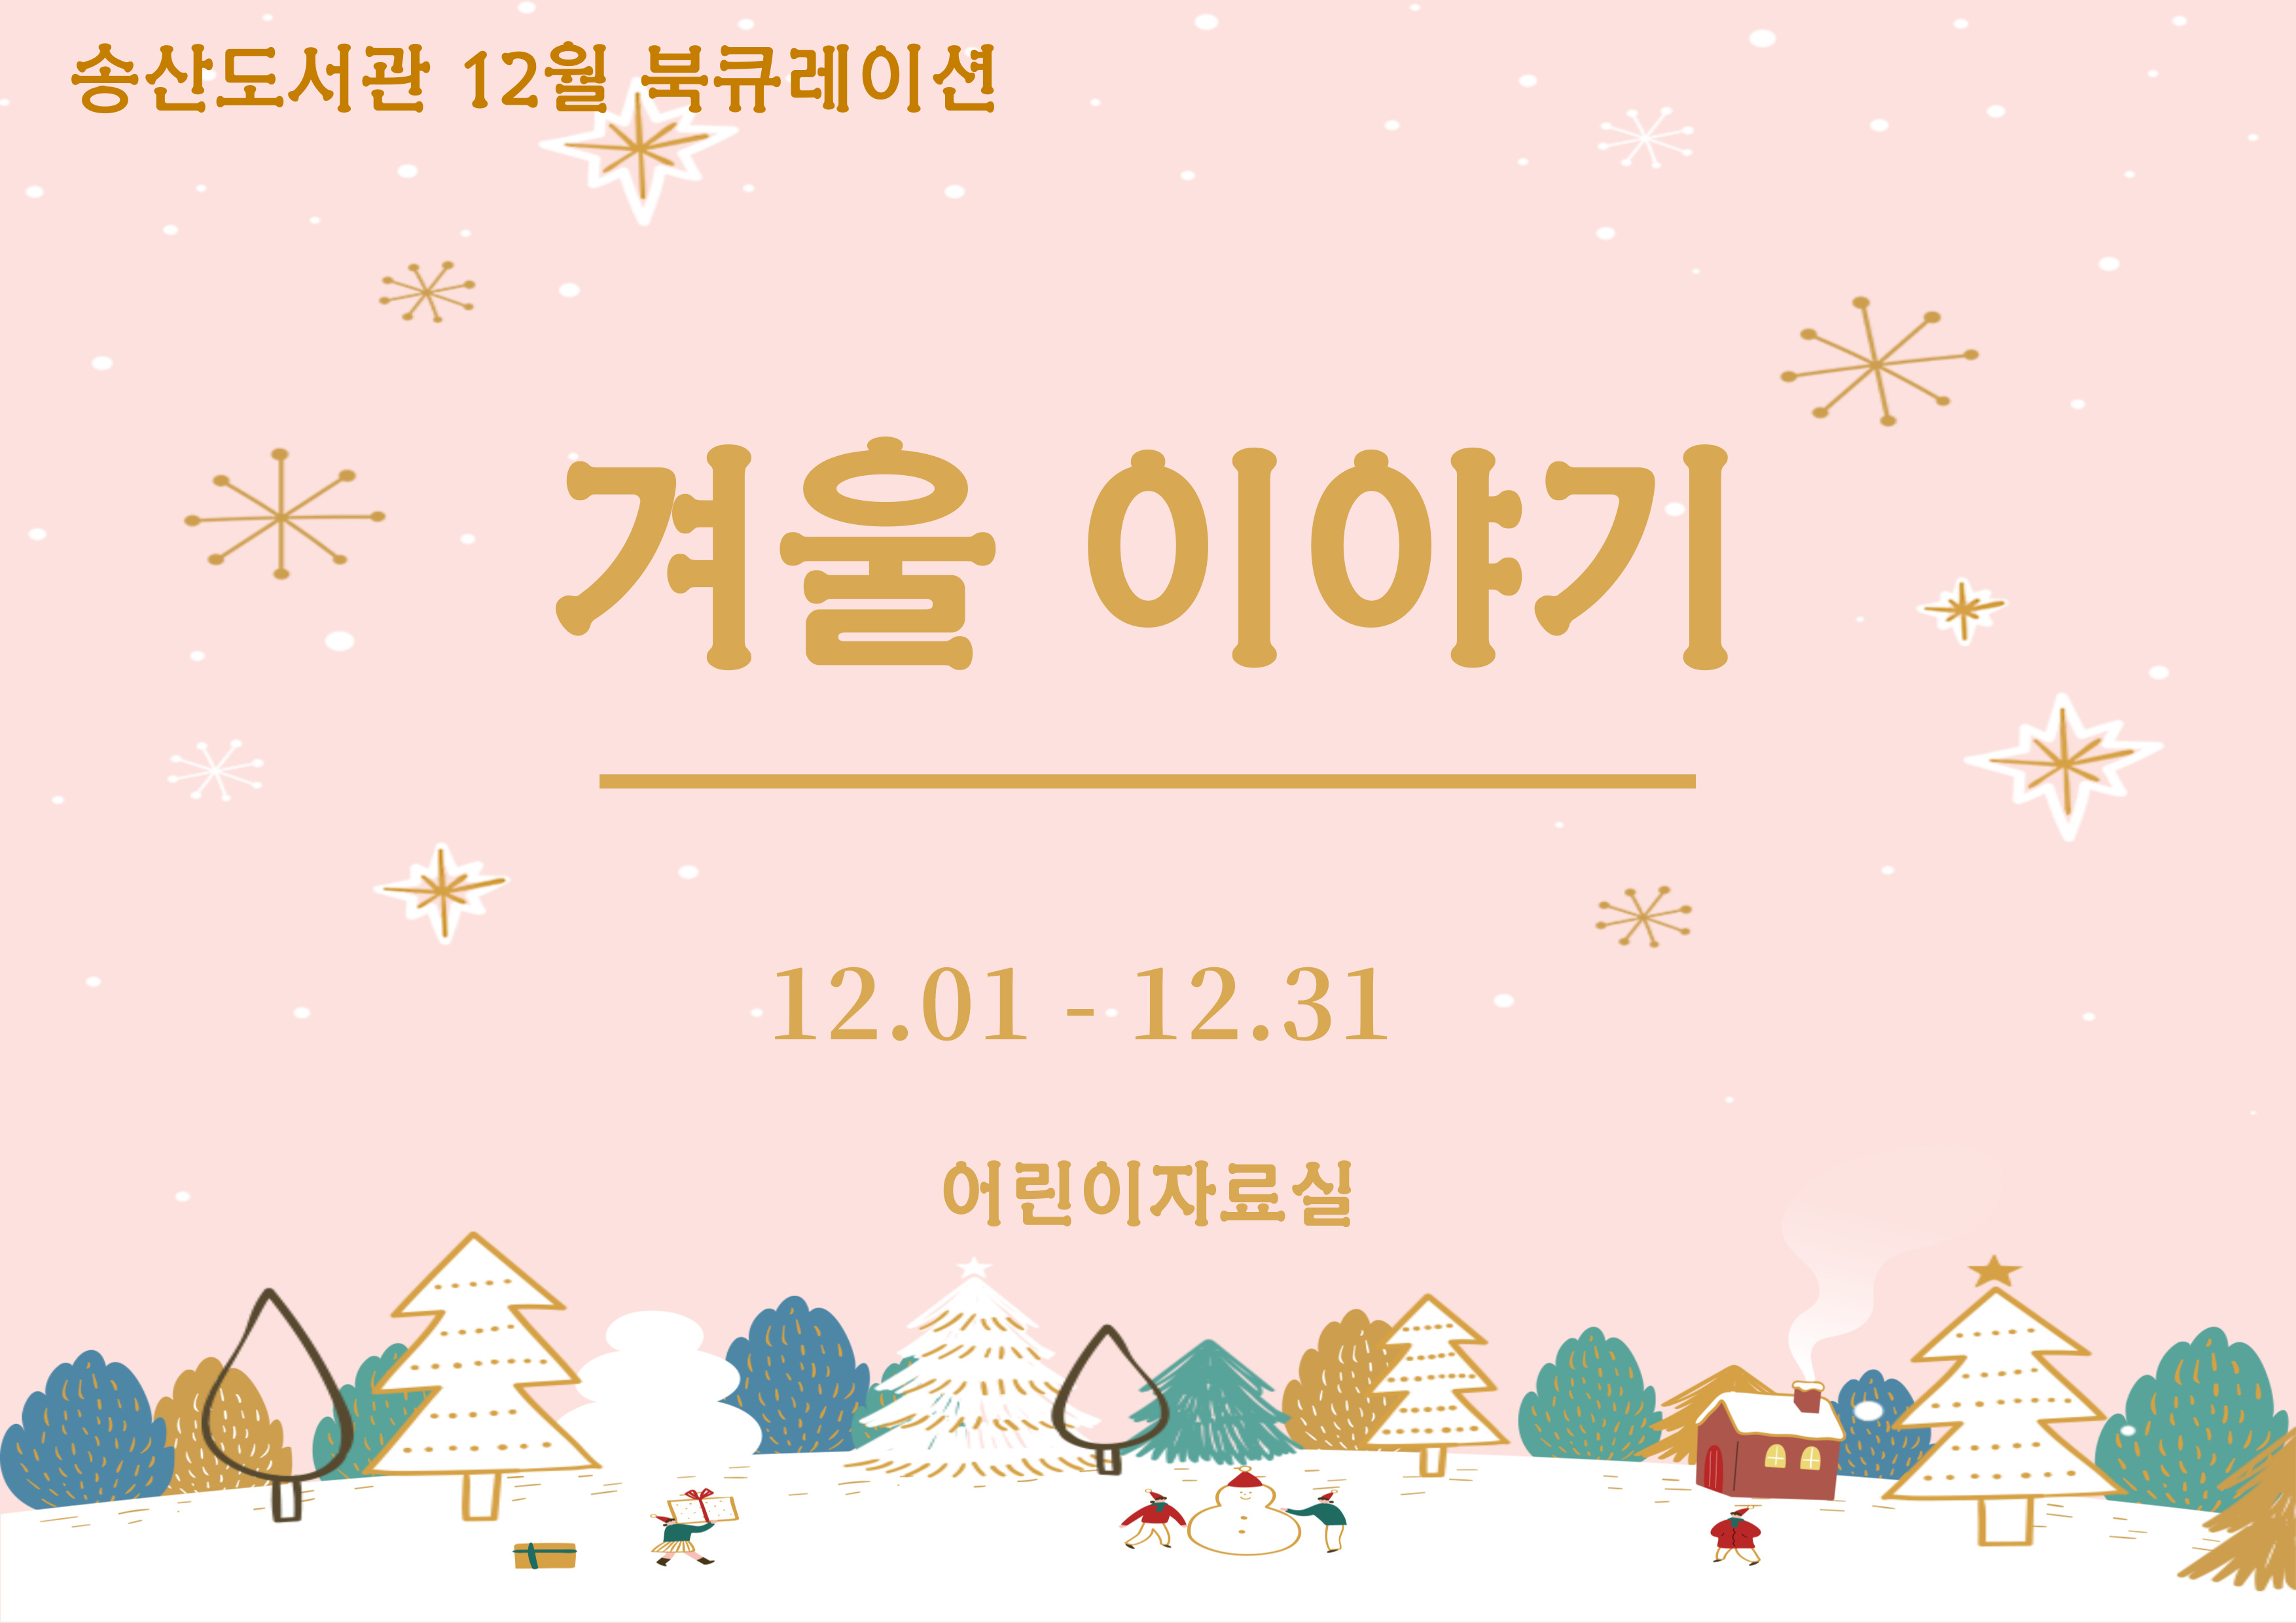 12월 송산도서관 북큐레이션 안내 (아동)